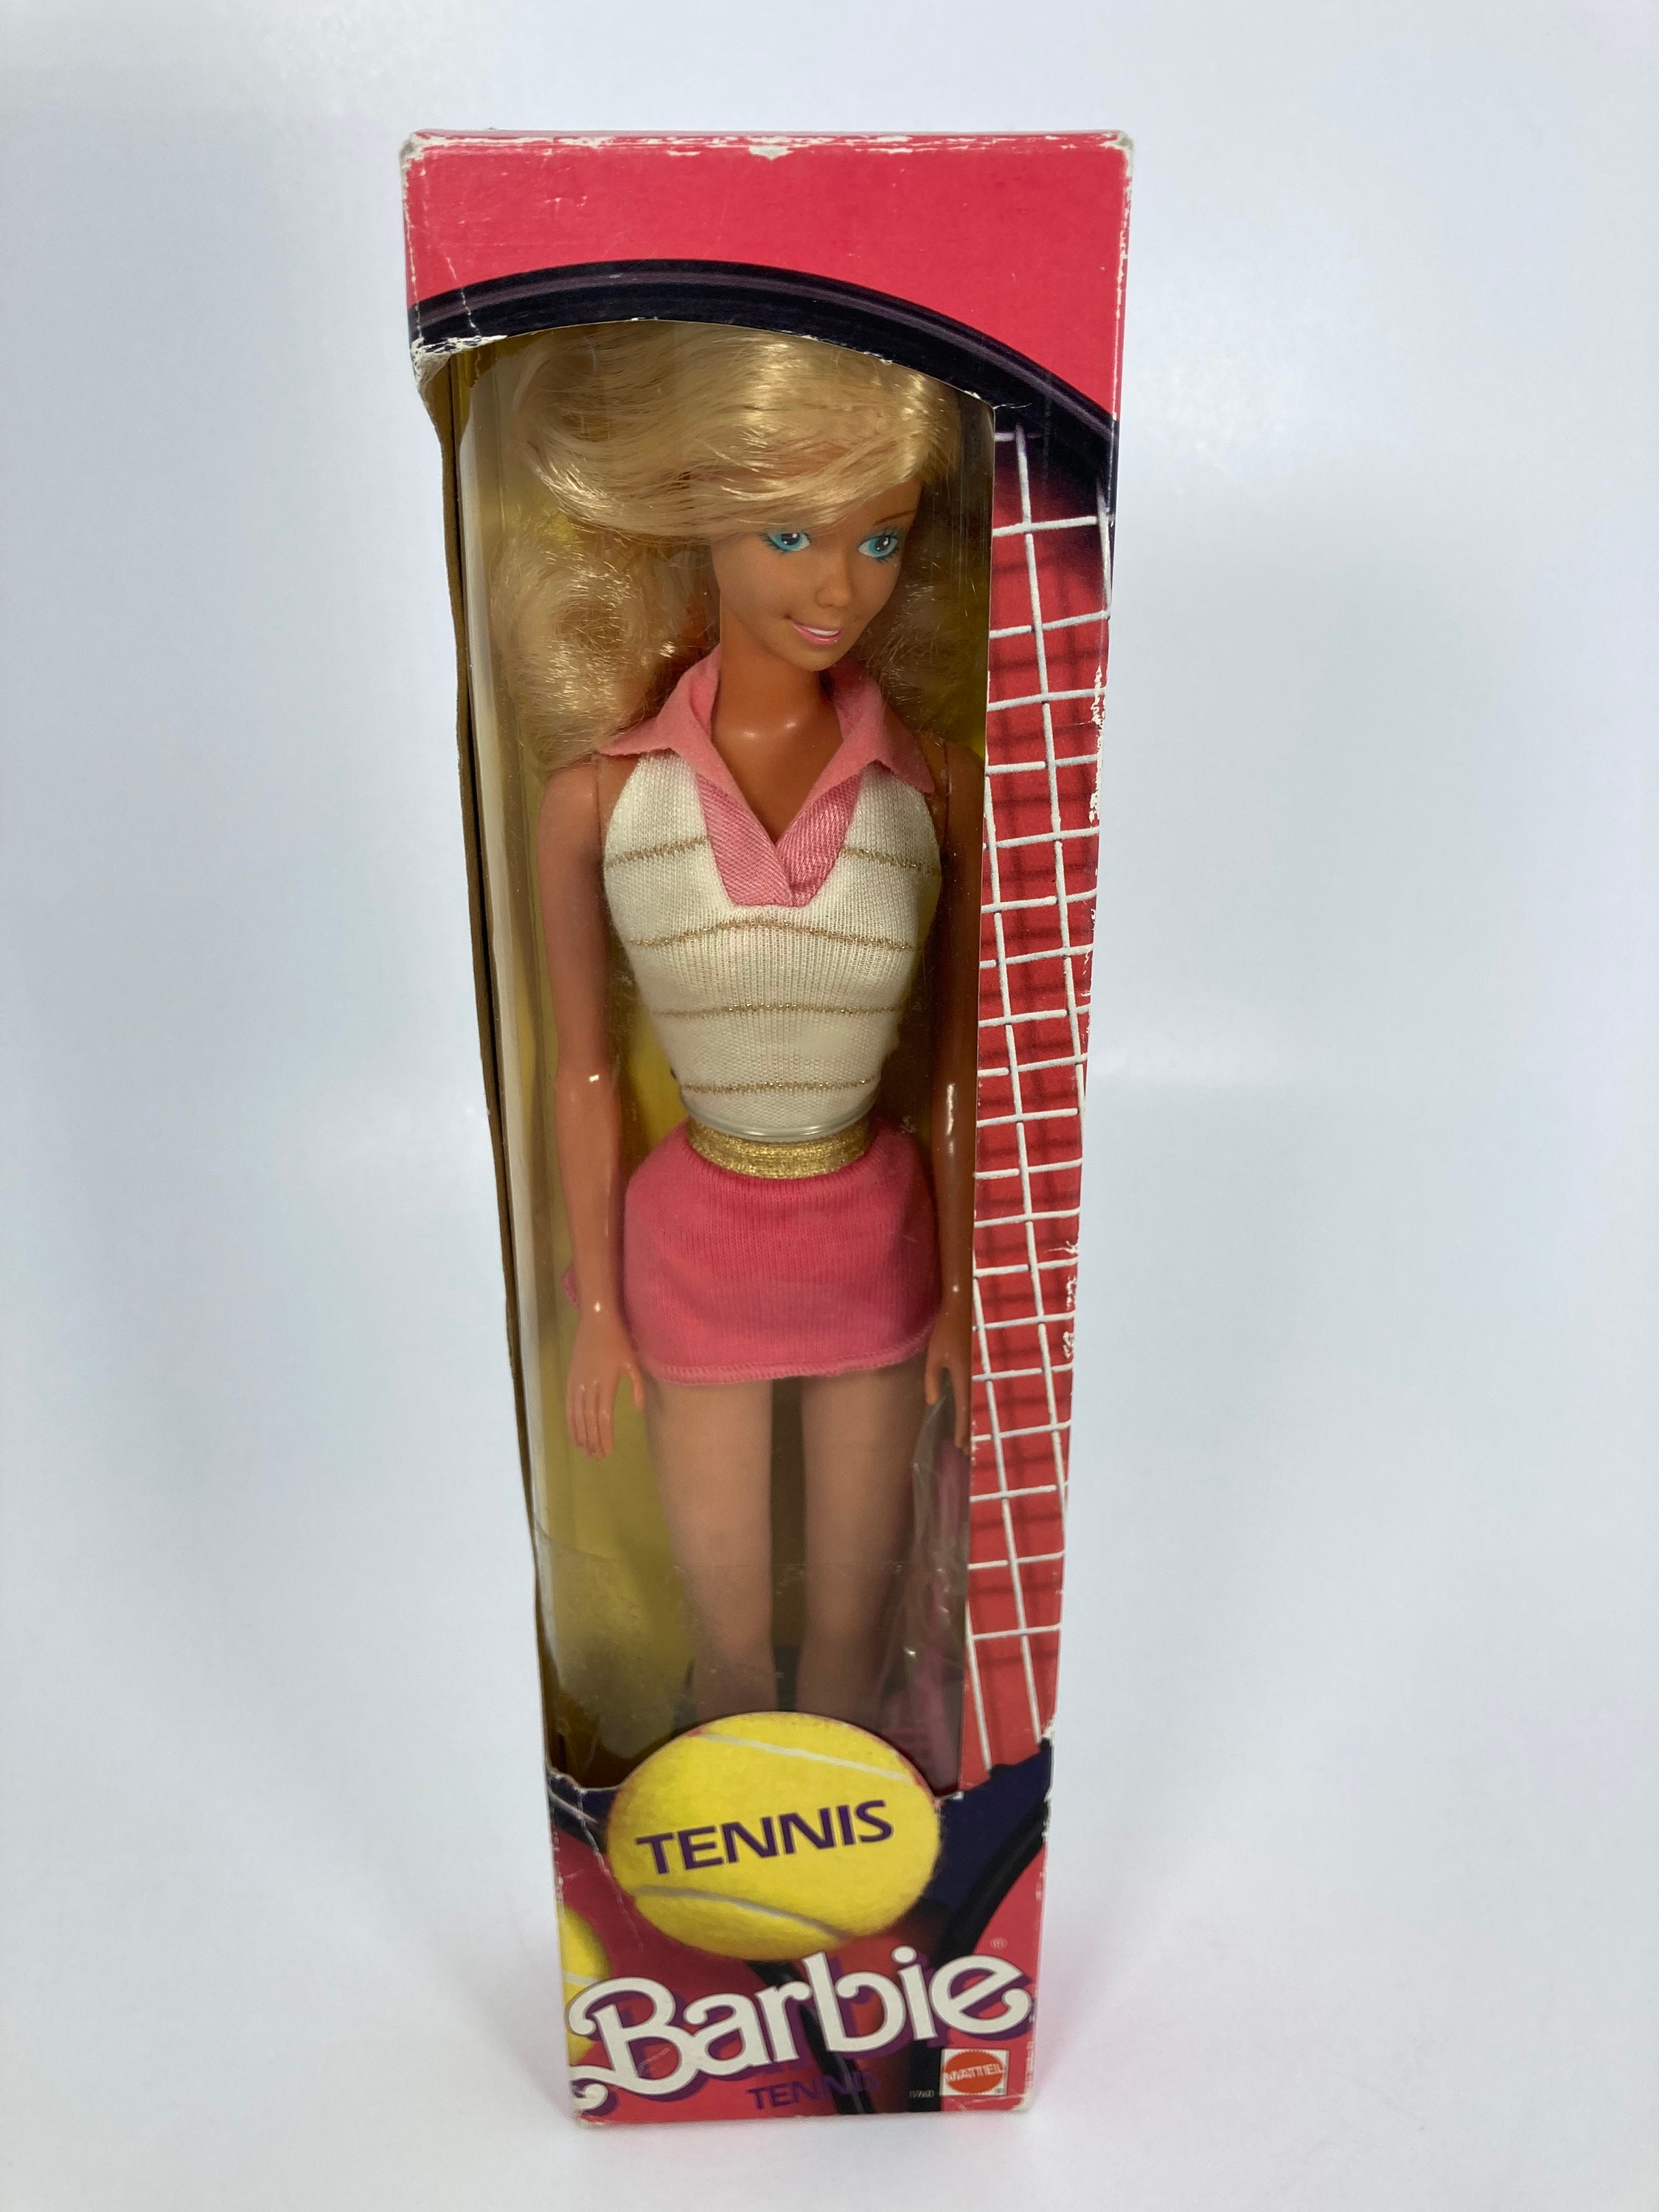 diepvries adverteren voorkomen 1986 Tennis Barbie - Etsy